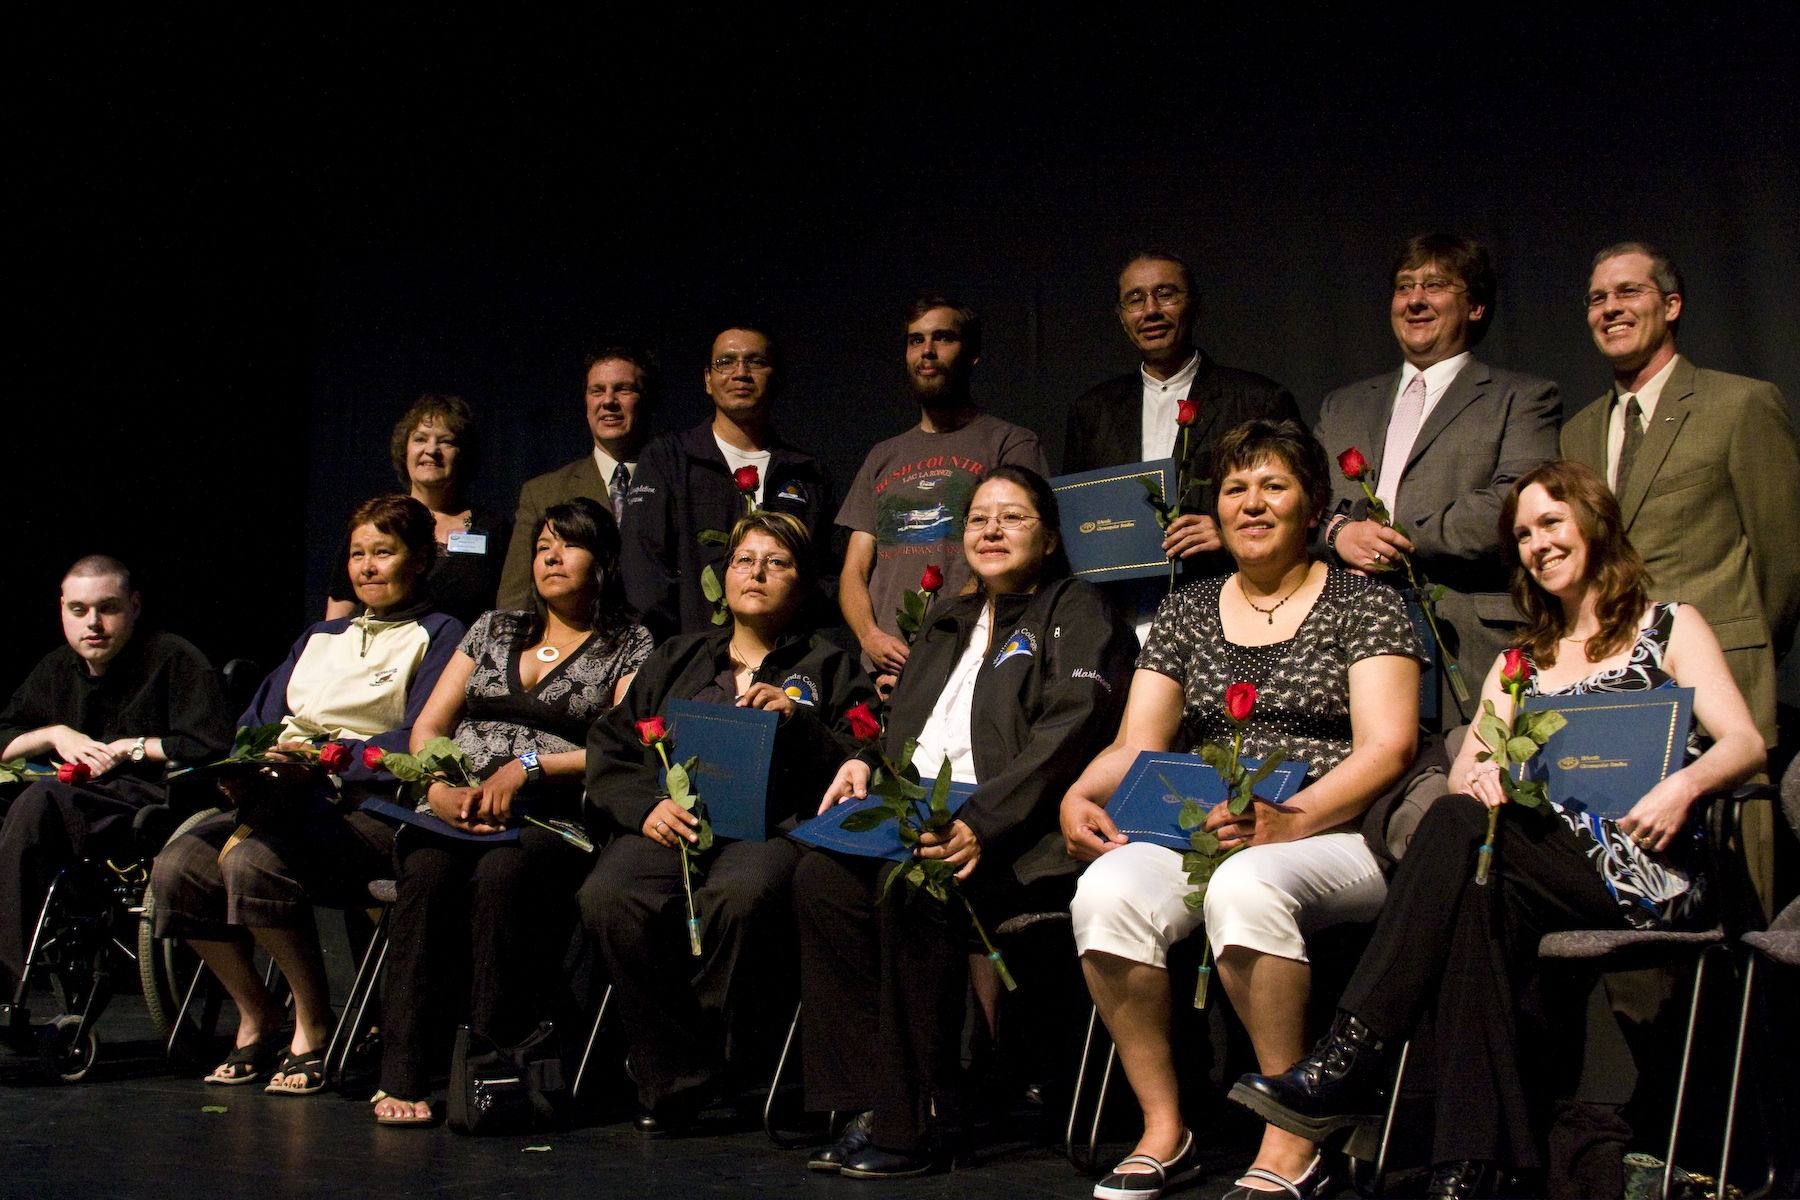 Canadian BCS Graduates with diplomas